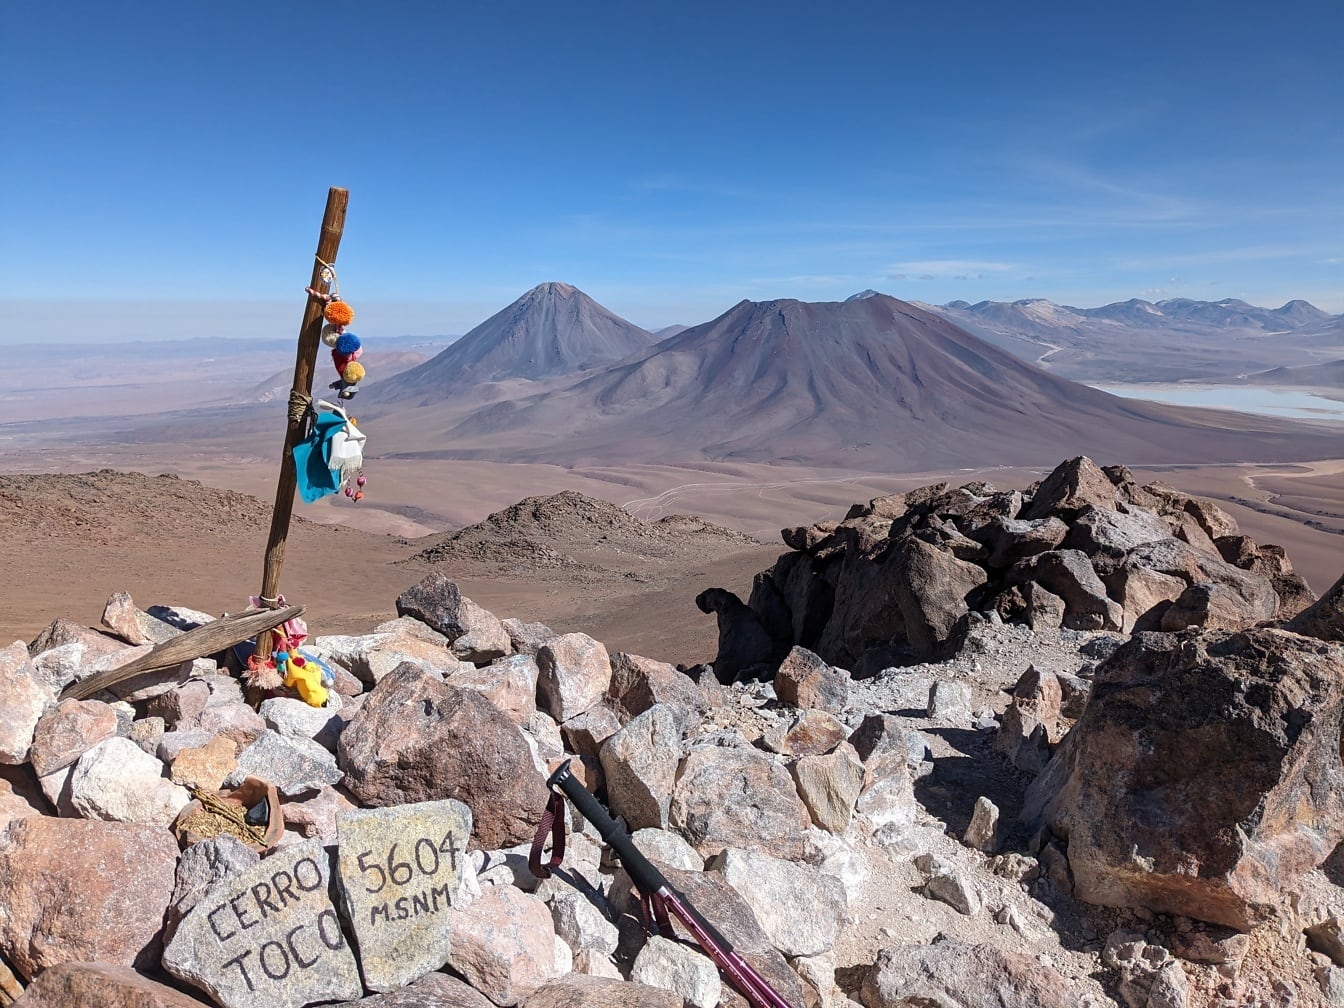 Cerro Toco hegycsúcs Chilében 5604 méter tengerszint feletti magasságban